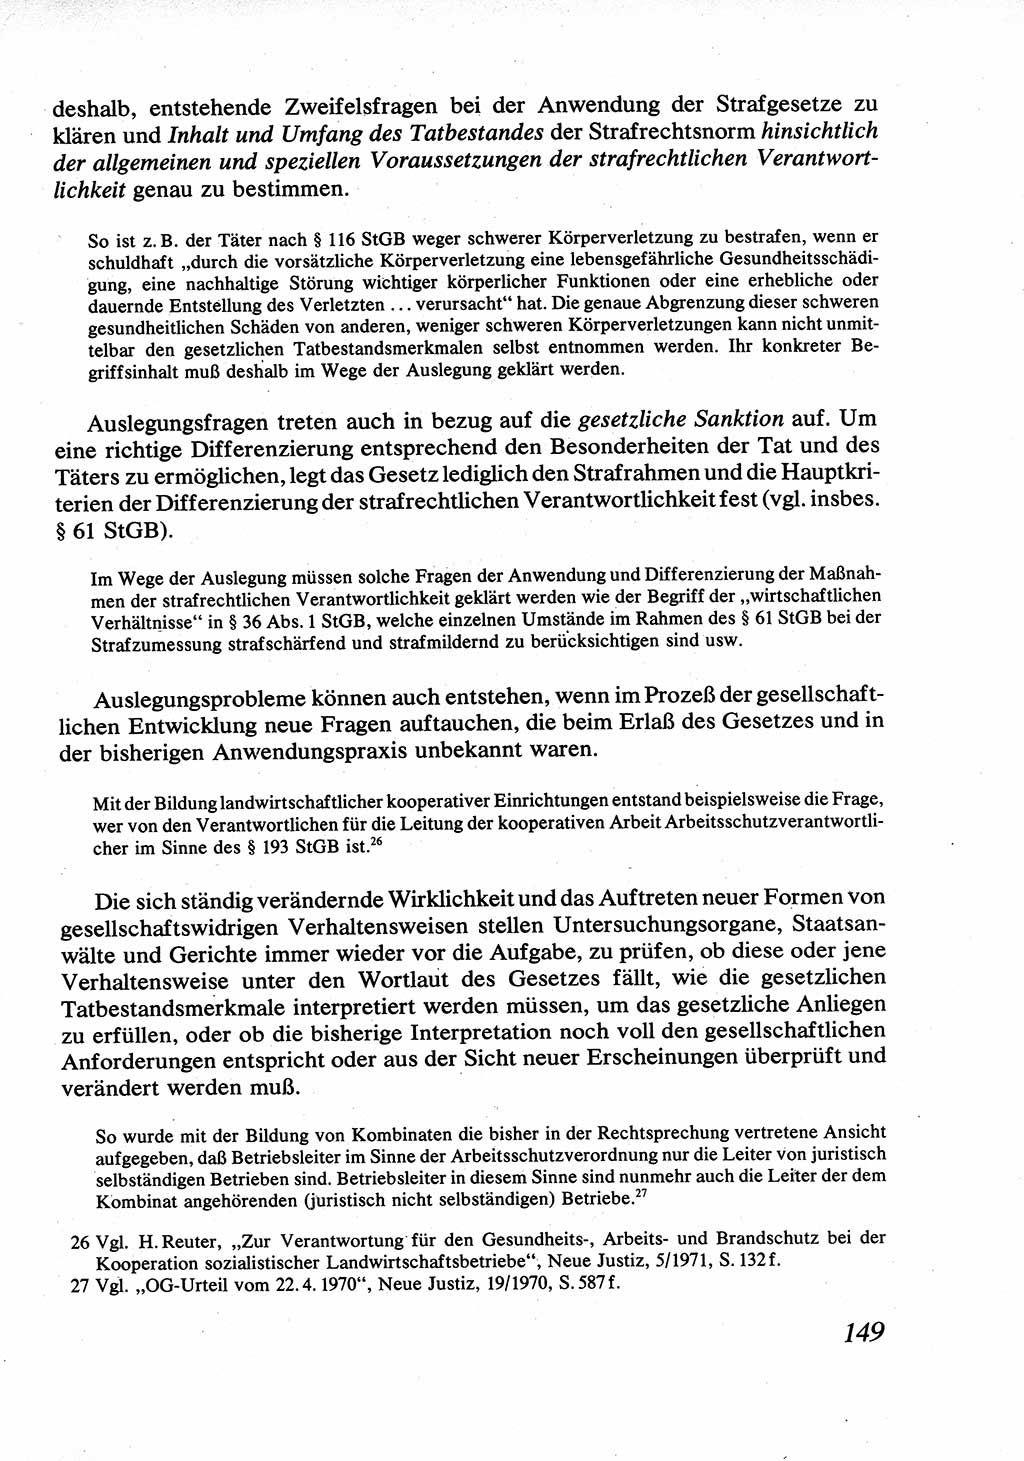 Strafrecht [Deutsche Demokratische Republik (DDR)], Allgemeiner Teil, Lehrbuch 1976, Seite 149 (Strafr. DDR AT Lb. 1976, S. 149)